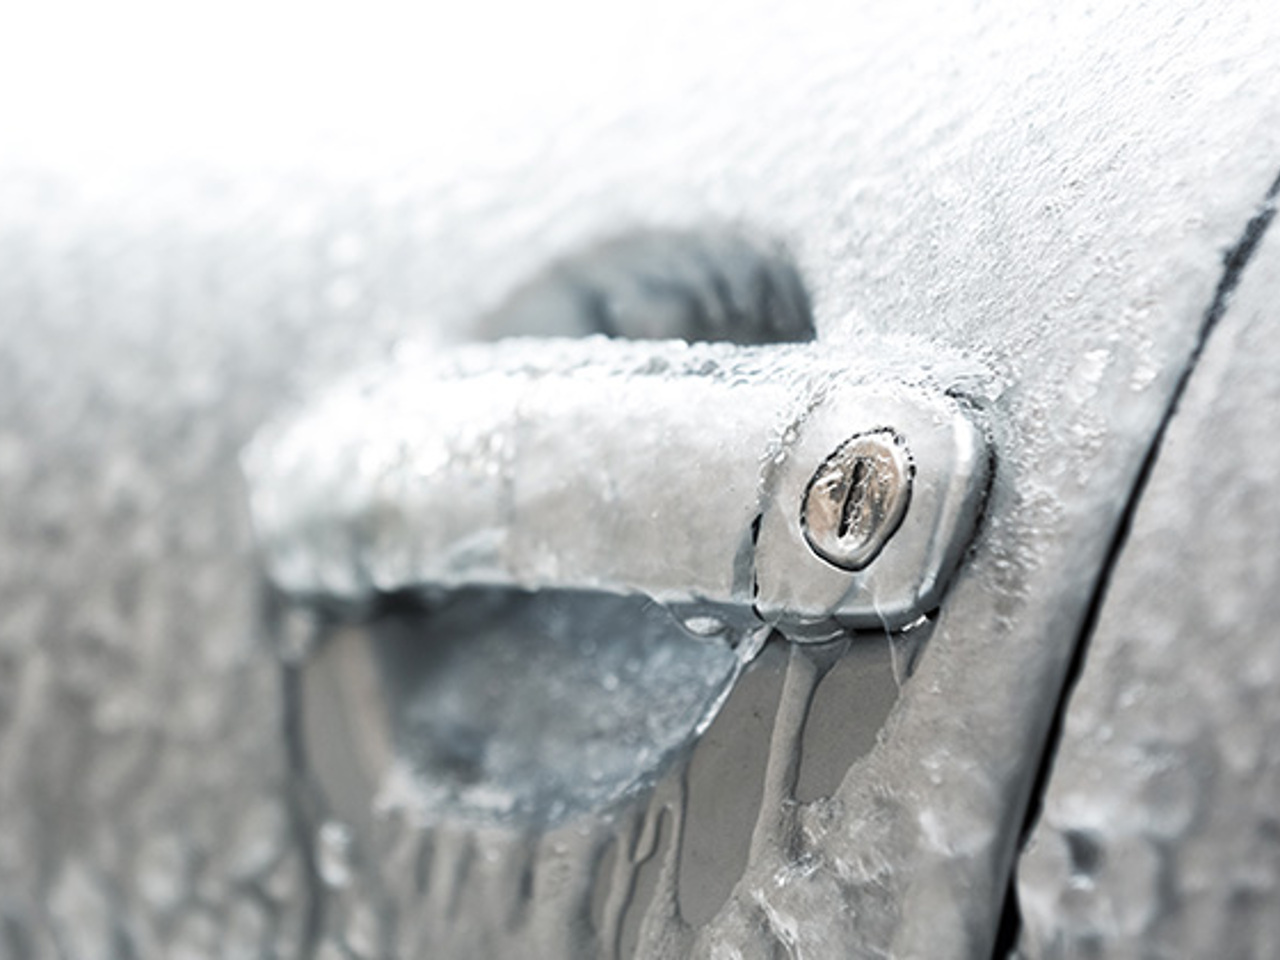 Замерзание замка. Замерзший замок автомобиля. Замерз замок авто. Примерзшая дверь автомобиля. Замерзли двери в машине.